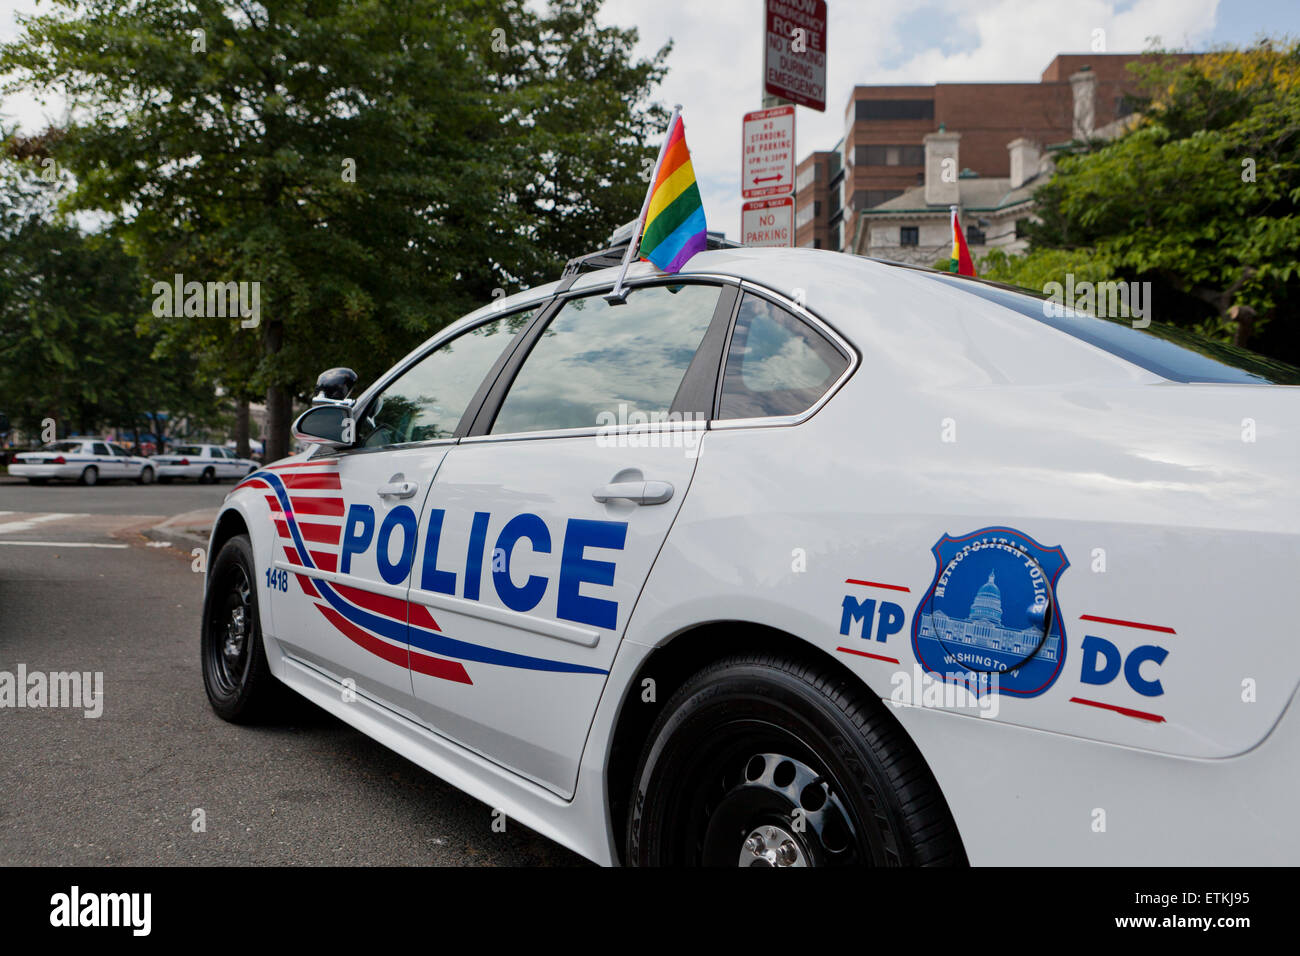 Voiture de police avec drapeau arc-en-ciel - Washington, DC USA Banque D'Images